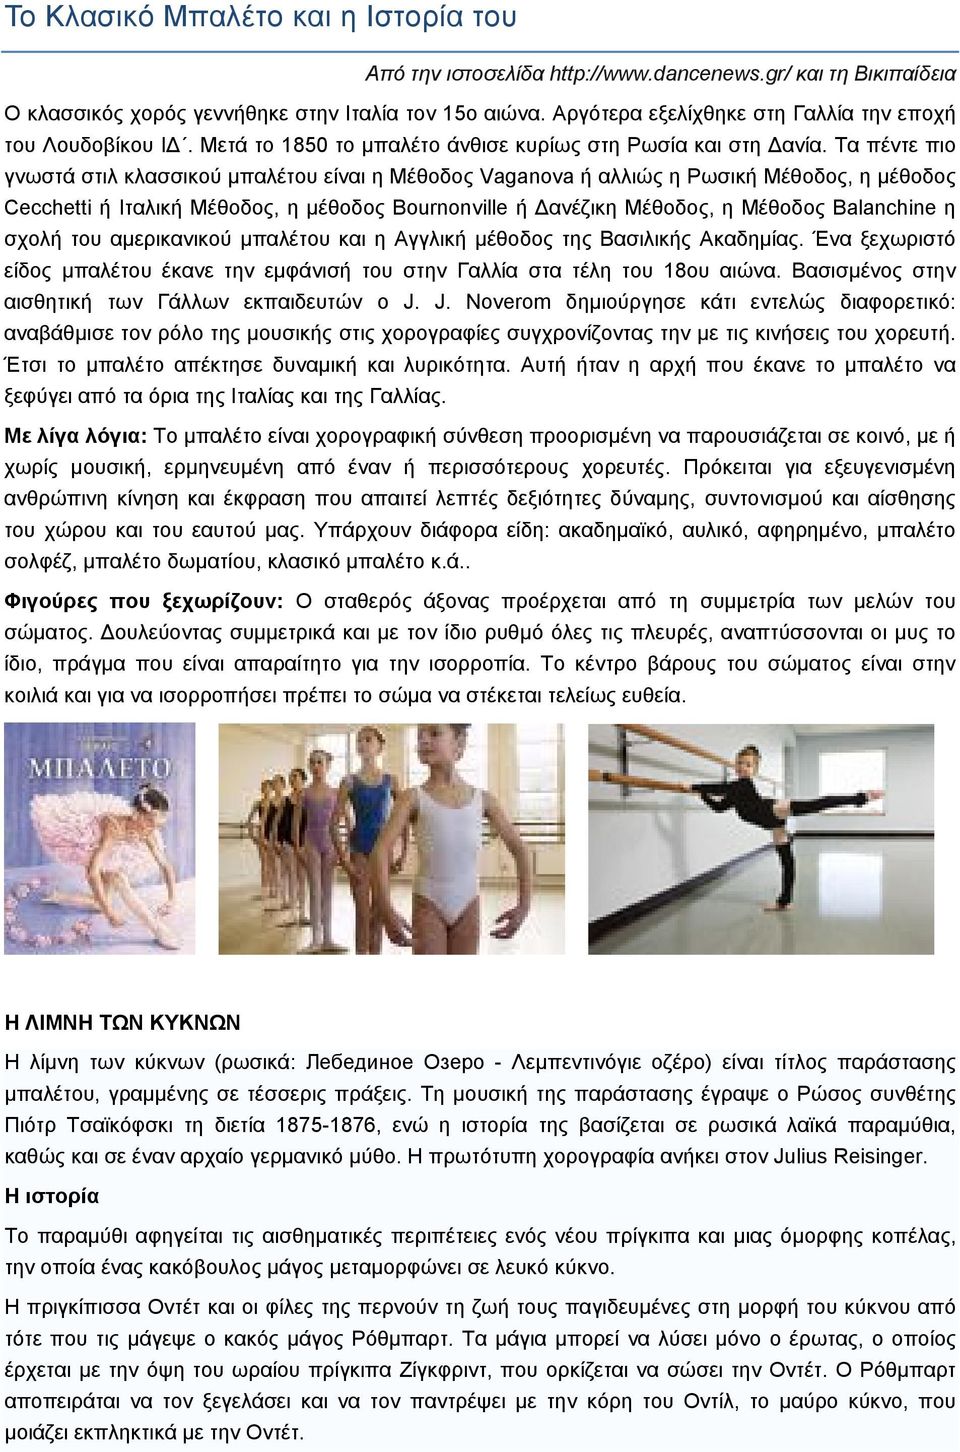 Τα πέντε πιο γνωστά στιλ κλασσικού μπαλέτου είναι η Μέθοδος Vaganova ή αλλιώς η Ρωσική Μέθοδος, η μέθοδος Cecchetti ή Ιταλική Μέθοδος, η μέθοδος Bournonville ή Δανέζικη Μέθοδος, η Μέθοδος Balanchine